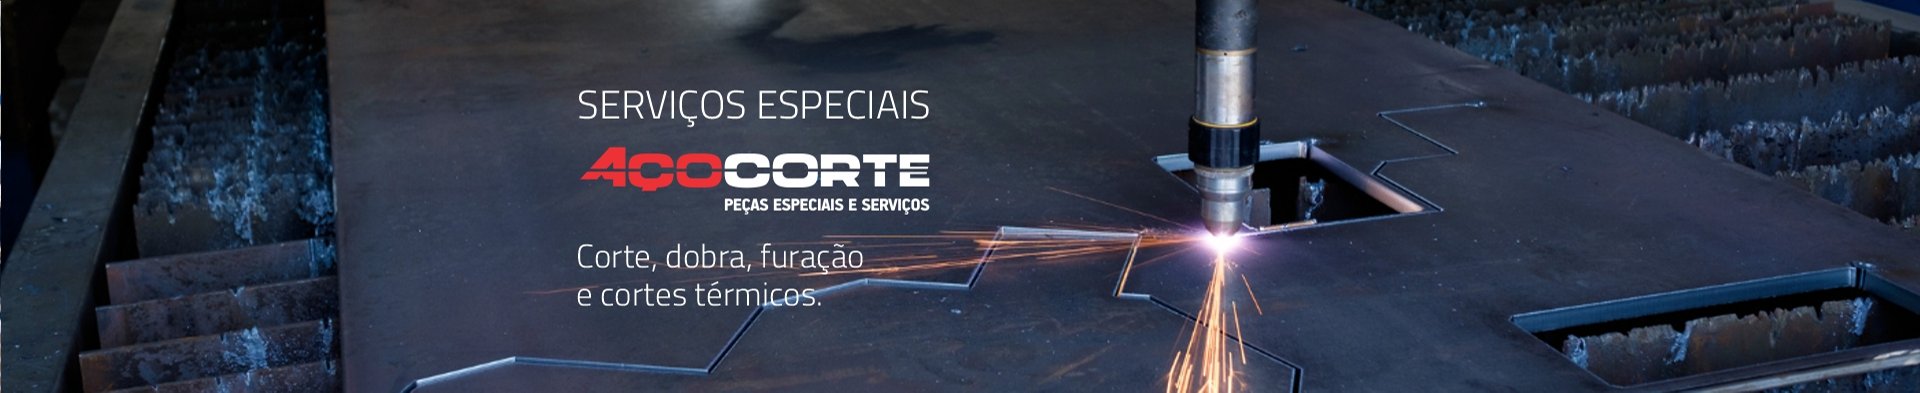 banner_servicos_especiais_acocorte